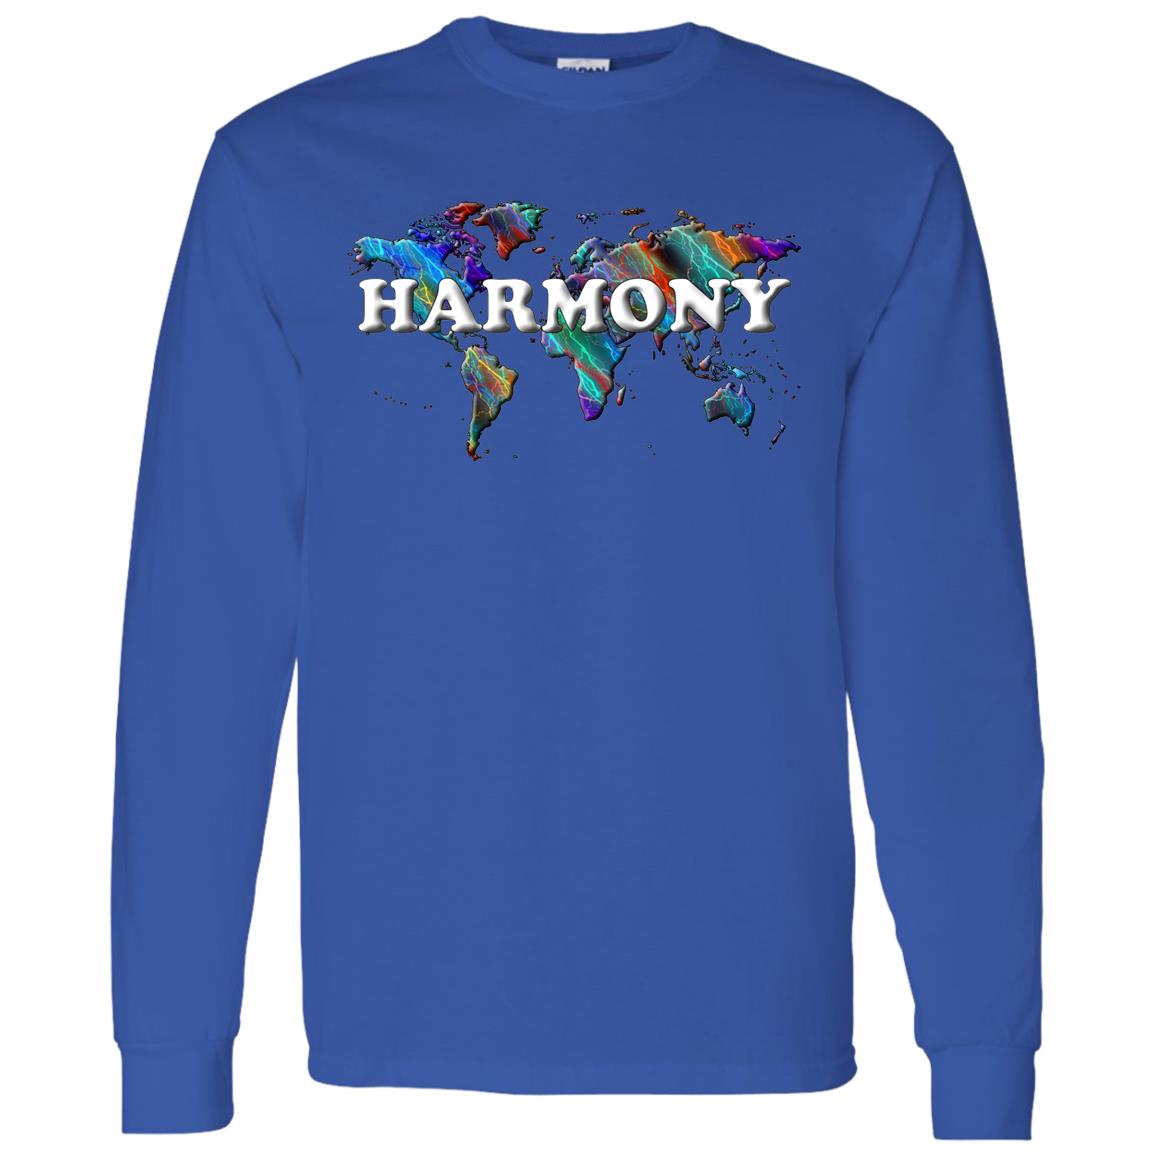 Harmony Long Sleeve T-Shirt